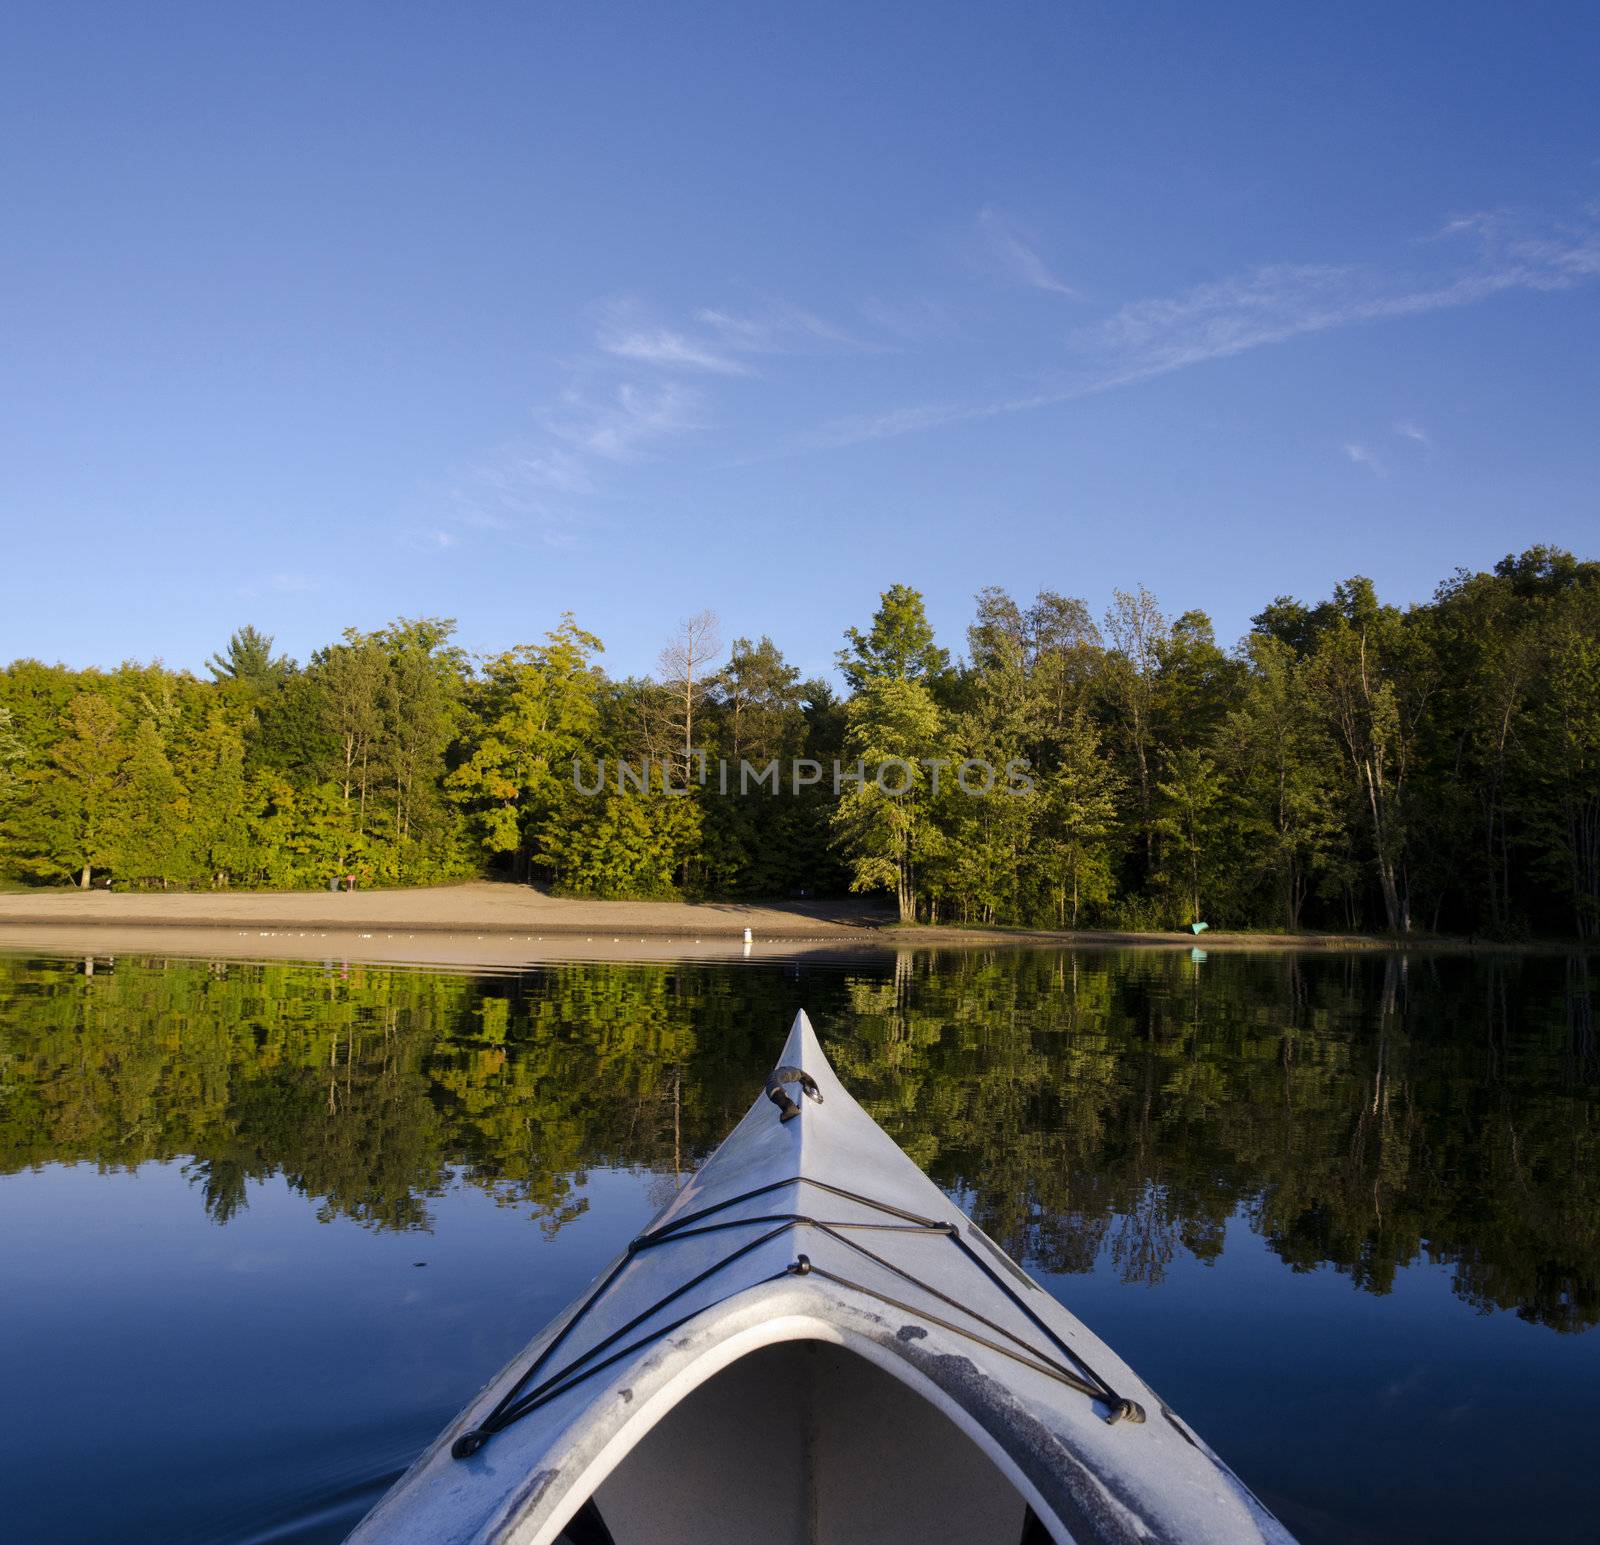 Kayak on Calm Lake by Gordo25